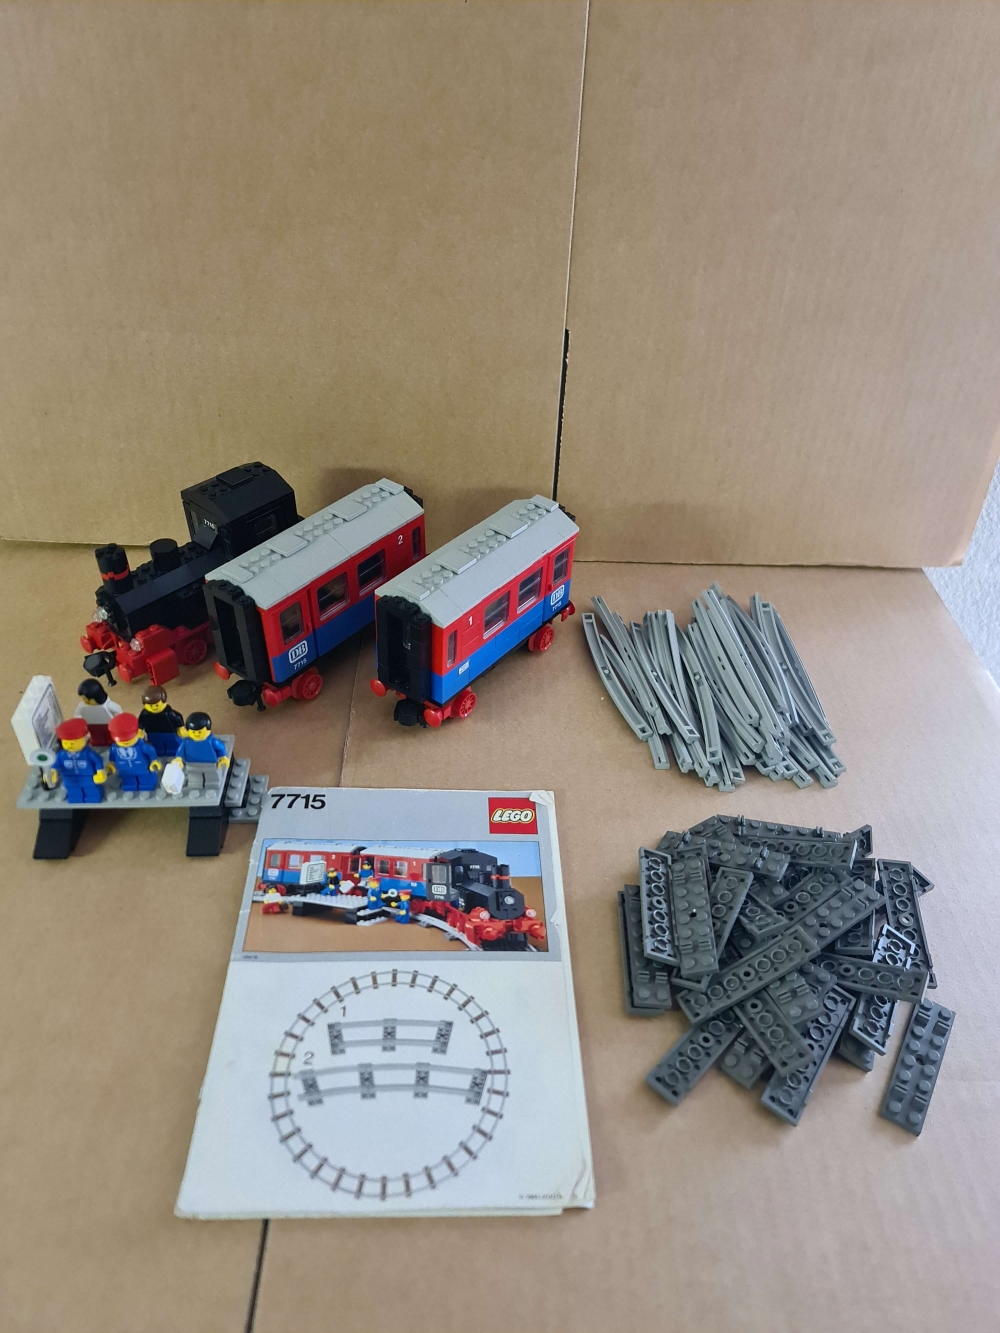 Sett 7715 fra lego Train : 4.5v serien.
Nydelig sett. 100 % komplett med alle originale klistremerker og manual.